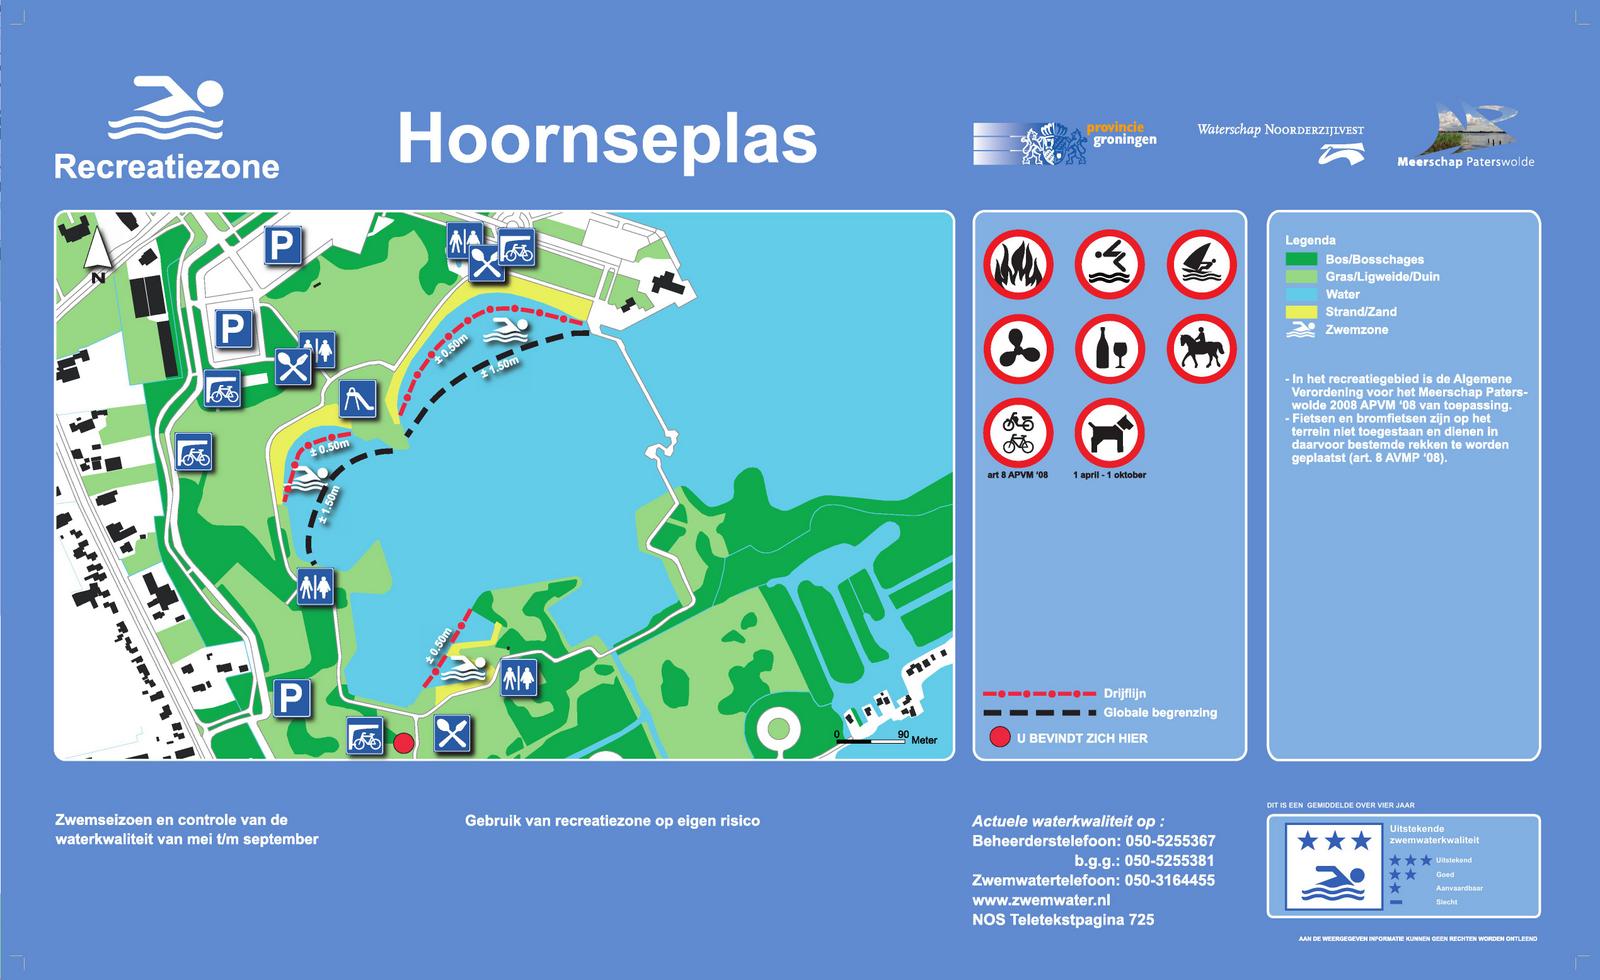 Het informatiebord bij zwemlocatie Hoornseplas zuid, Groningen